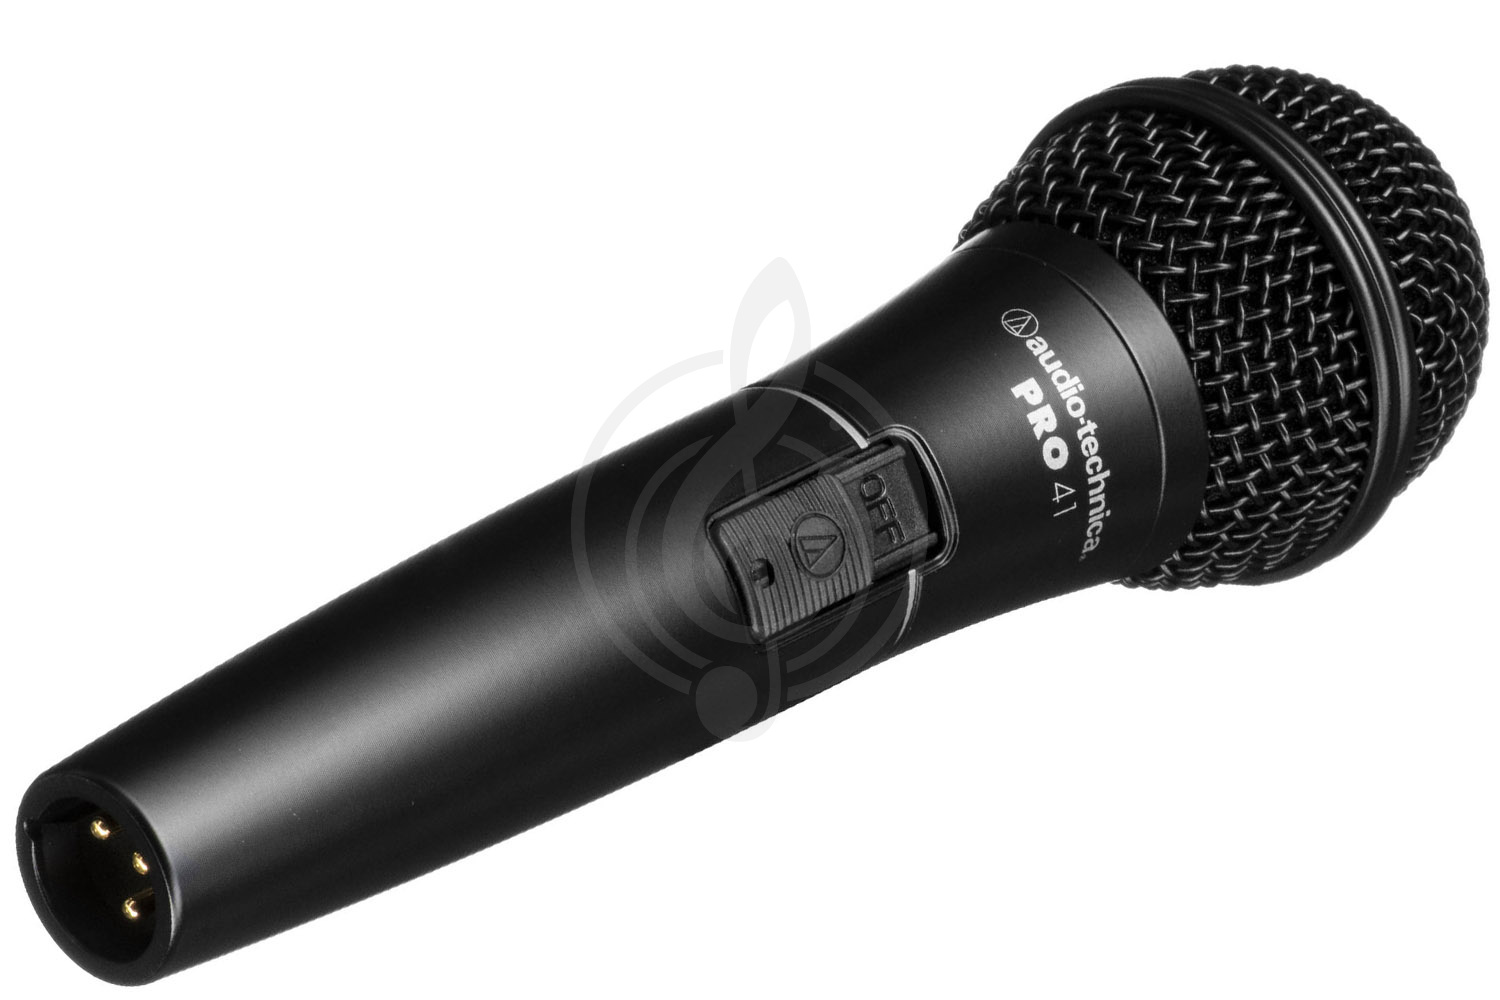 Динамический вокальный микрофон Динамические вокальные микрофоны AUDIO-TECHNICA Audio-Technica PRO41 - Микрофон динамический вокальный кардиоидный PRO41 - фото 1